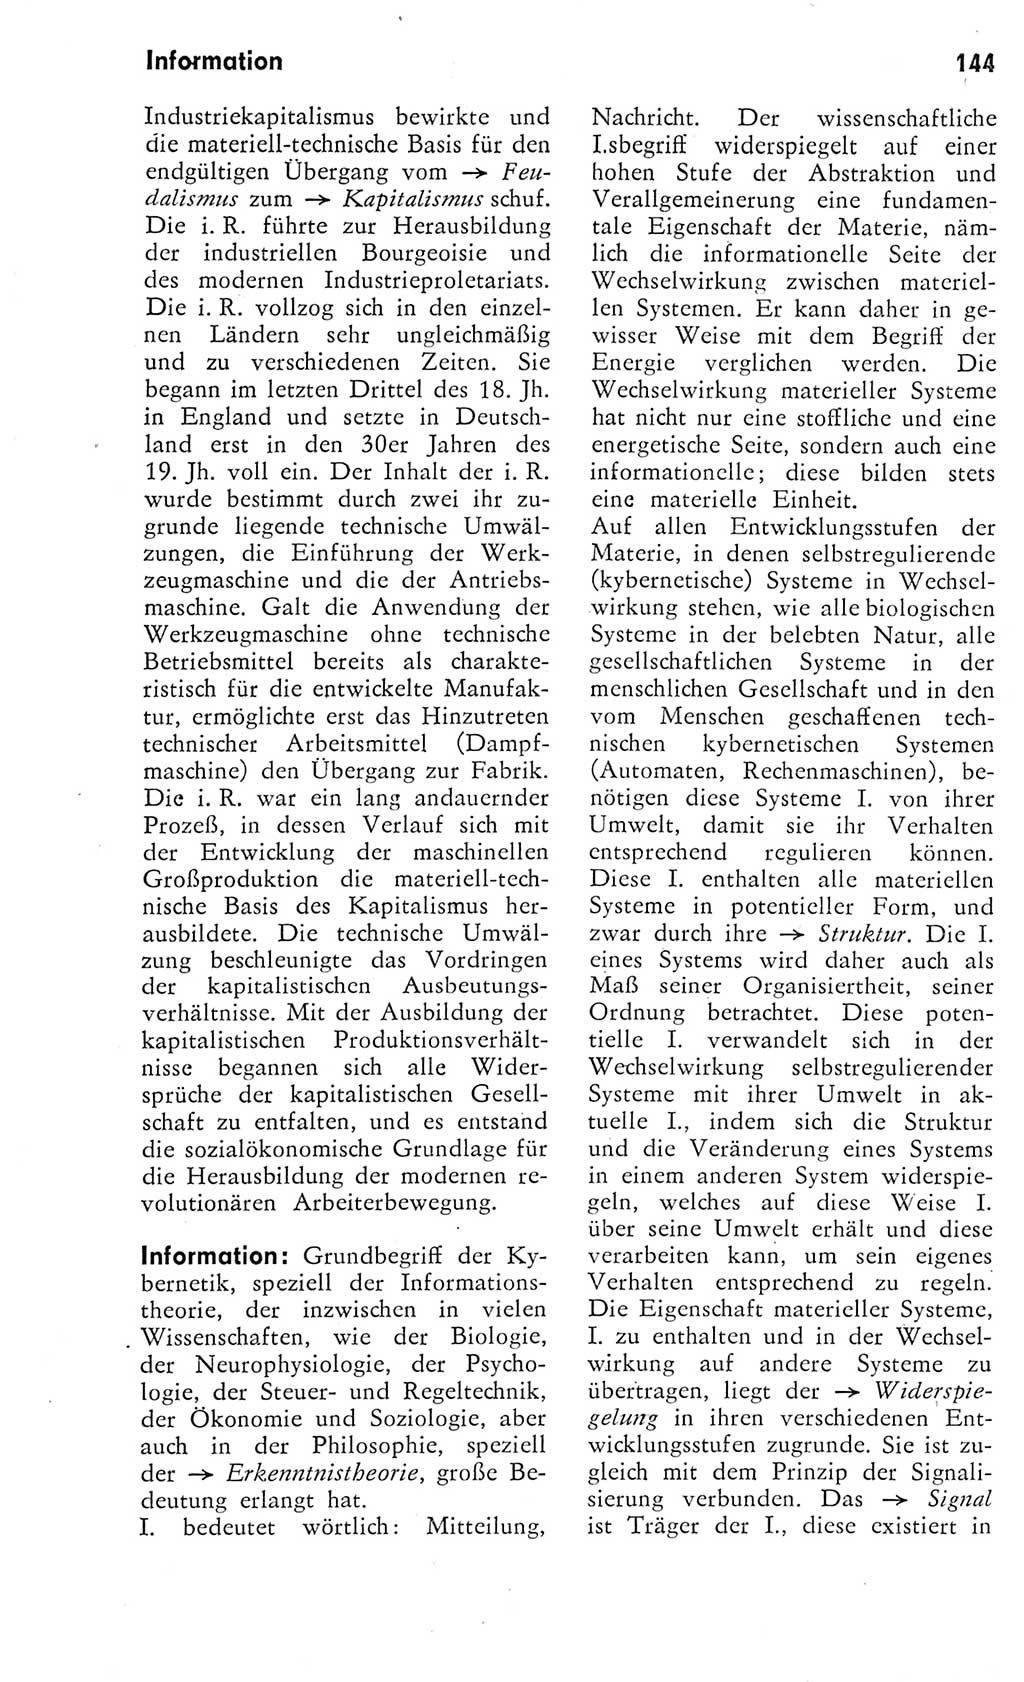 Kleines Wörterbuch der marxistisch-leninistischen Philosophie [Deutsche Demokratische Republik (DDR)] 1975, Seite 144 (Kl. Wb. ML Phil. DDR 1975, S. 144)